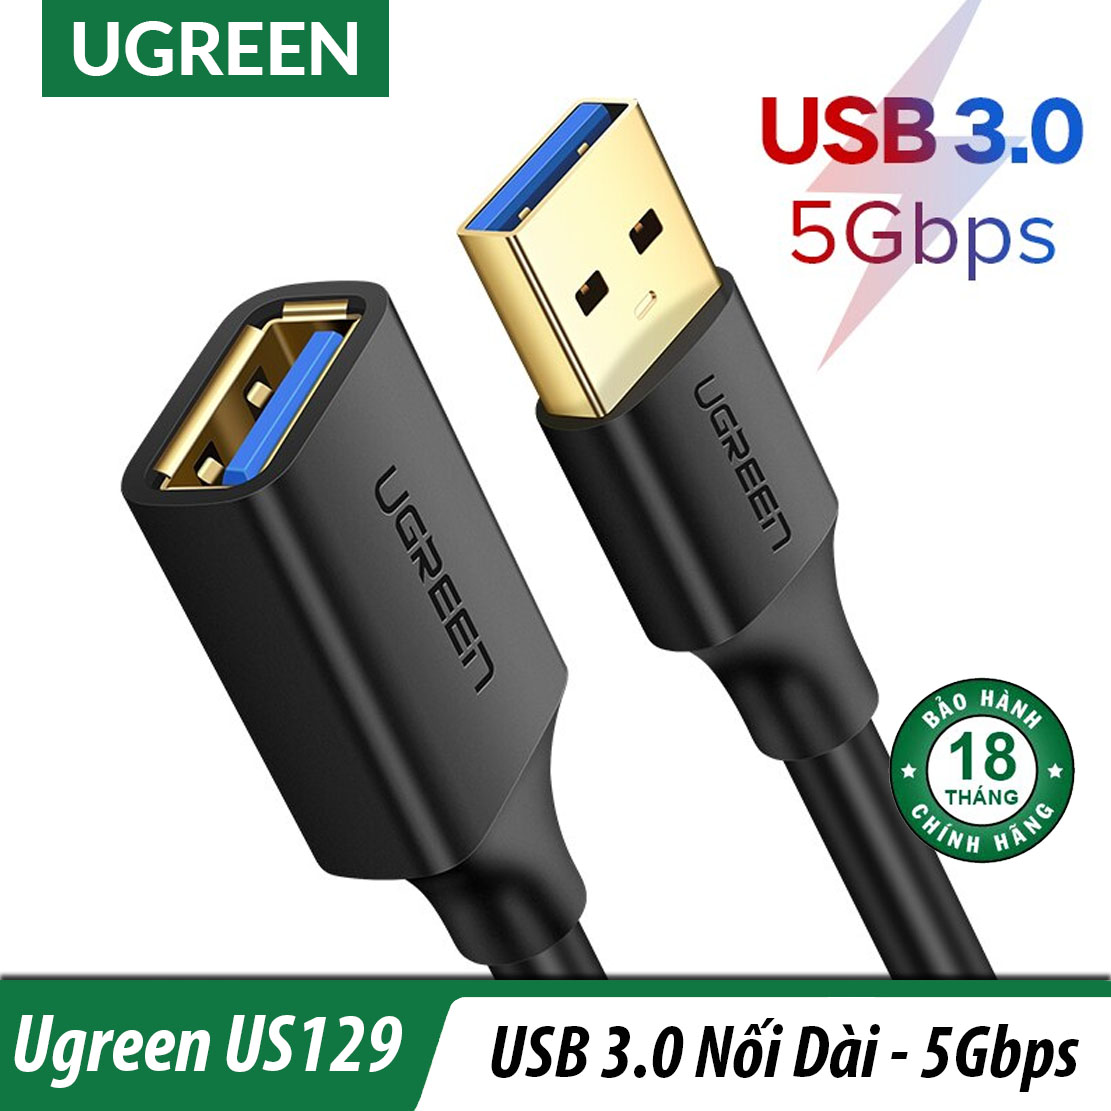 Cáp Nối Dài USB 3.0 Cao Cấp UGREEN Chính Hãng US129 - BH 18T Chính Hãng